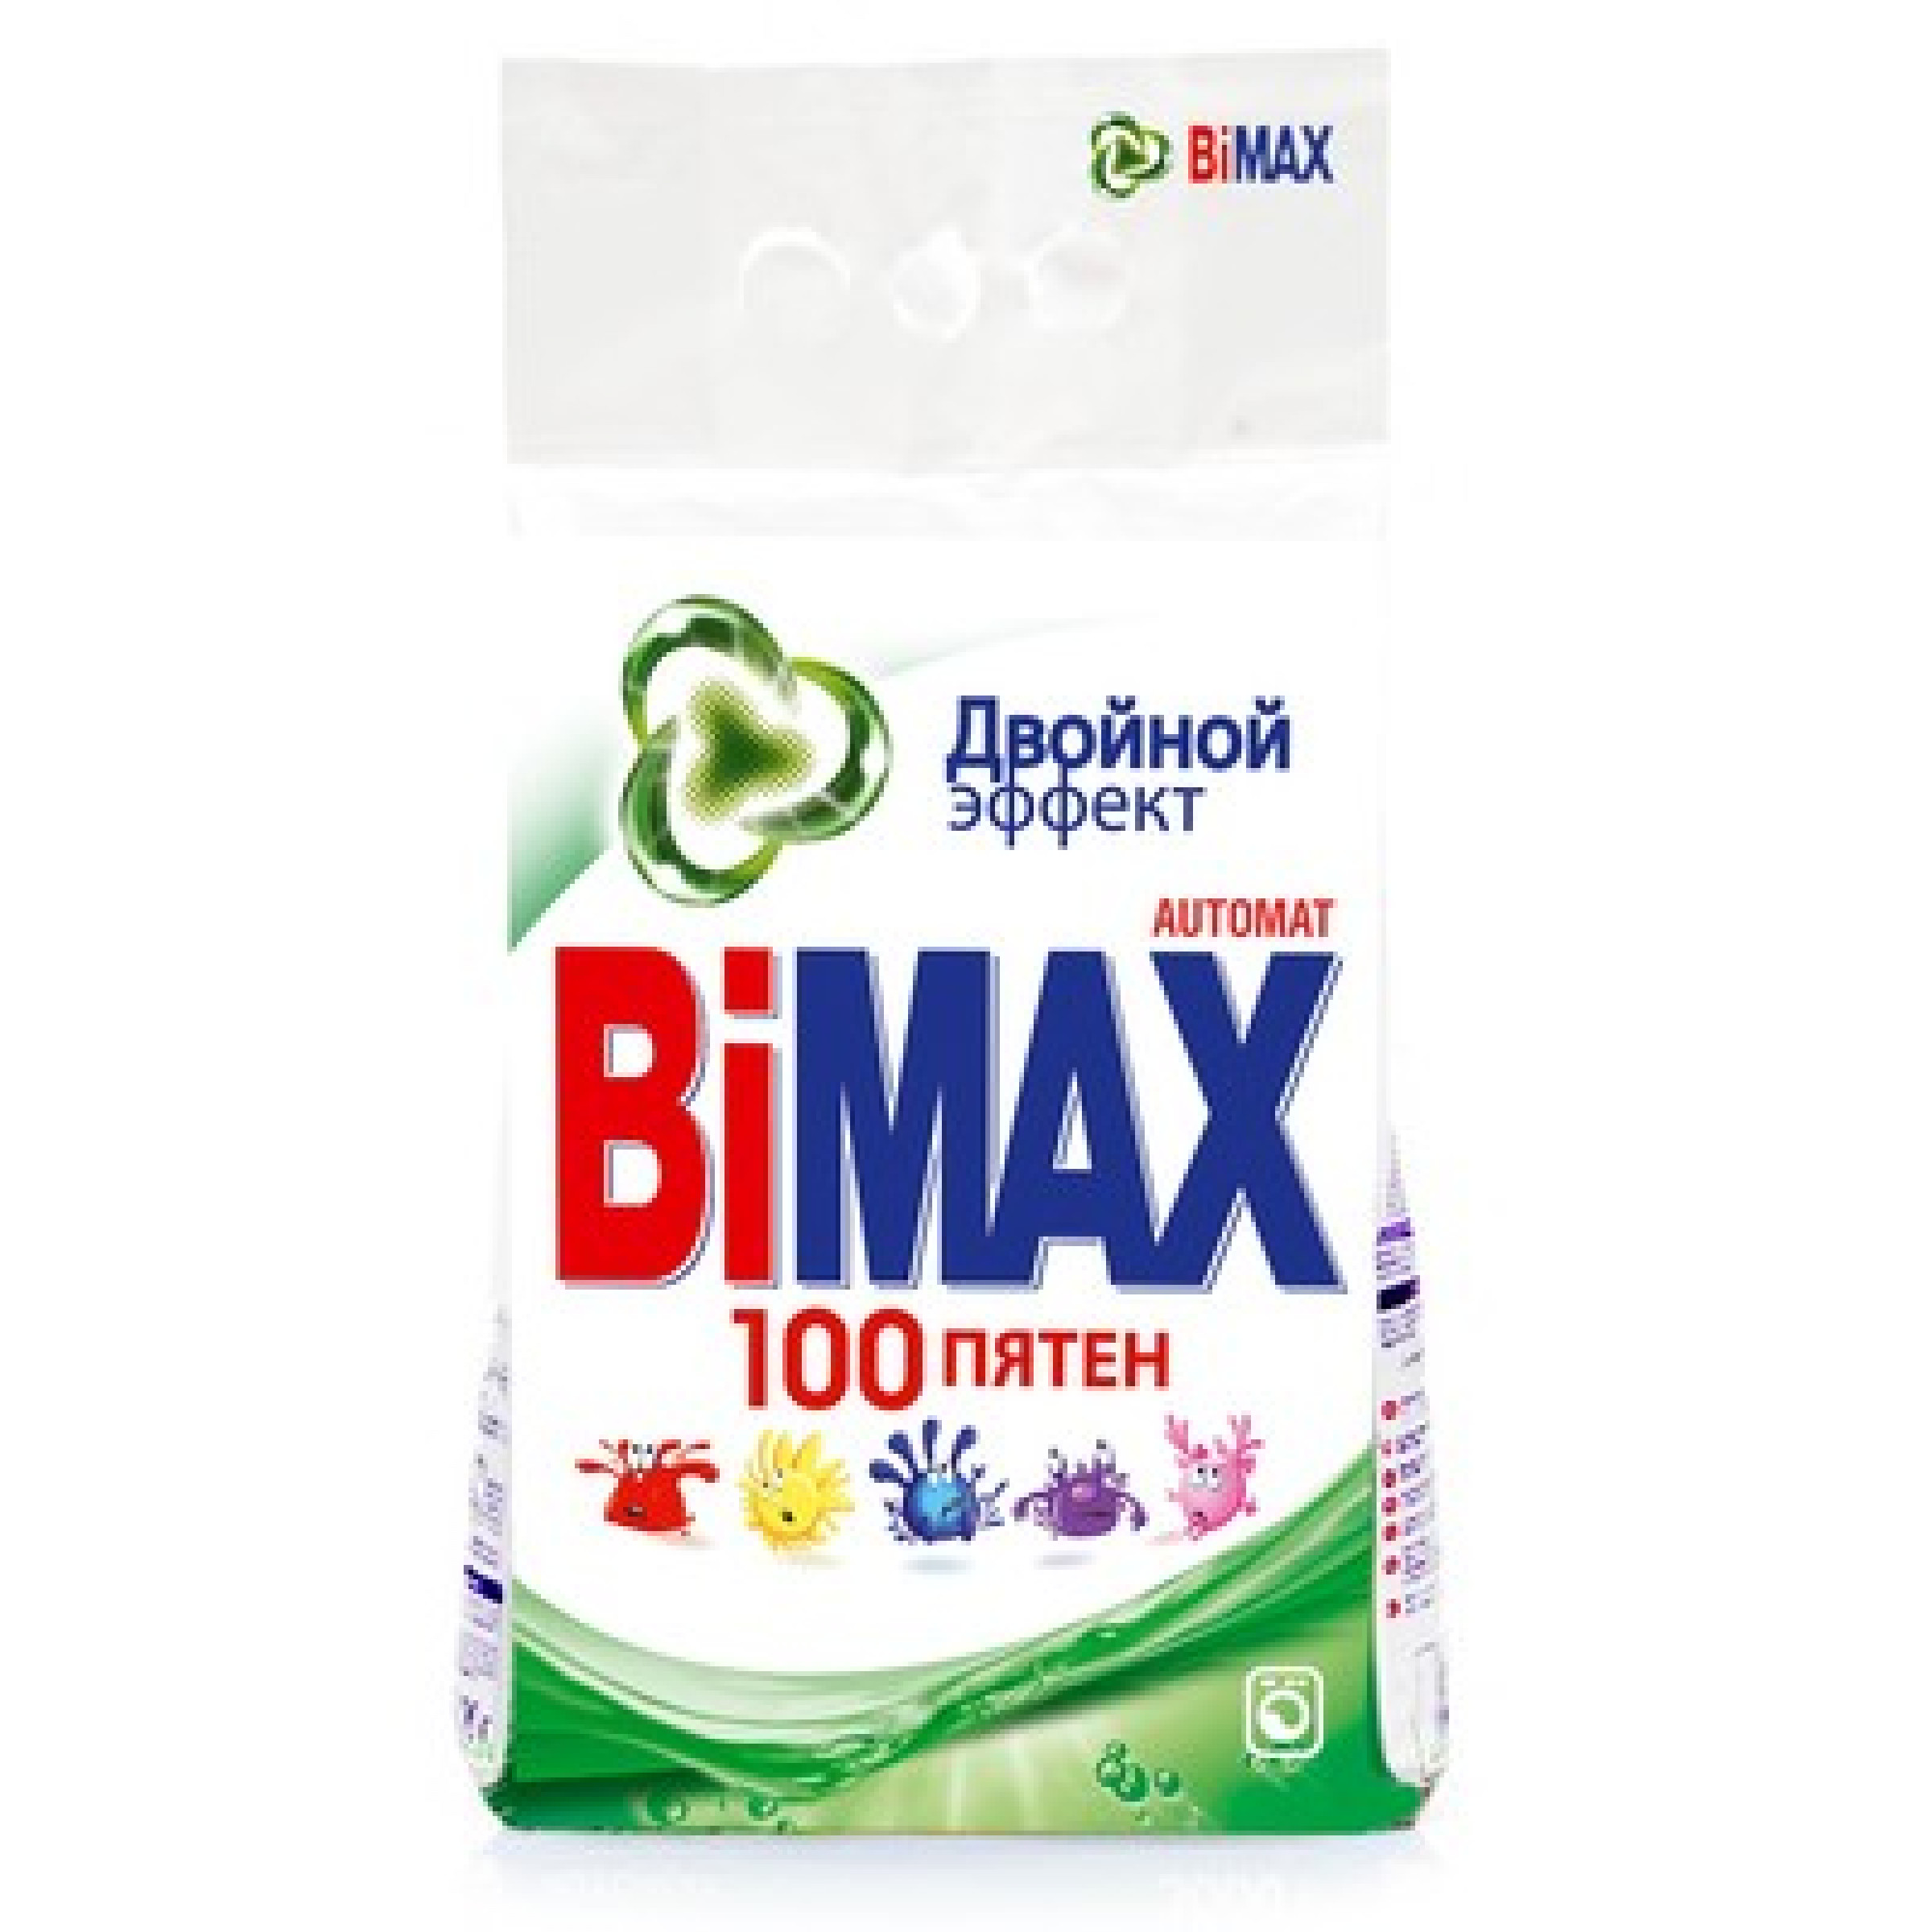 Стиральный порошок BiMax 100 пятен Двойной эффект автомат, 1,5кг